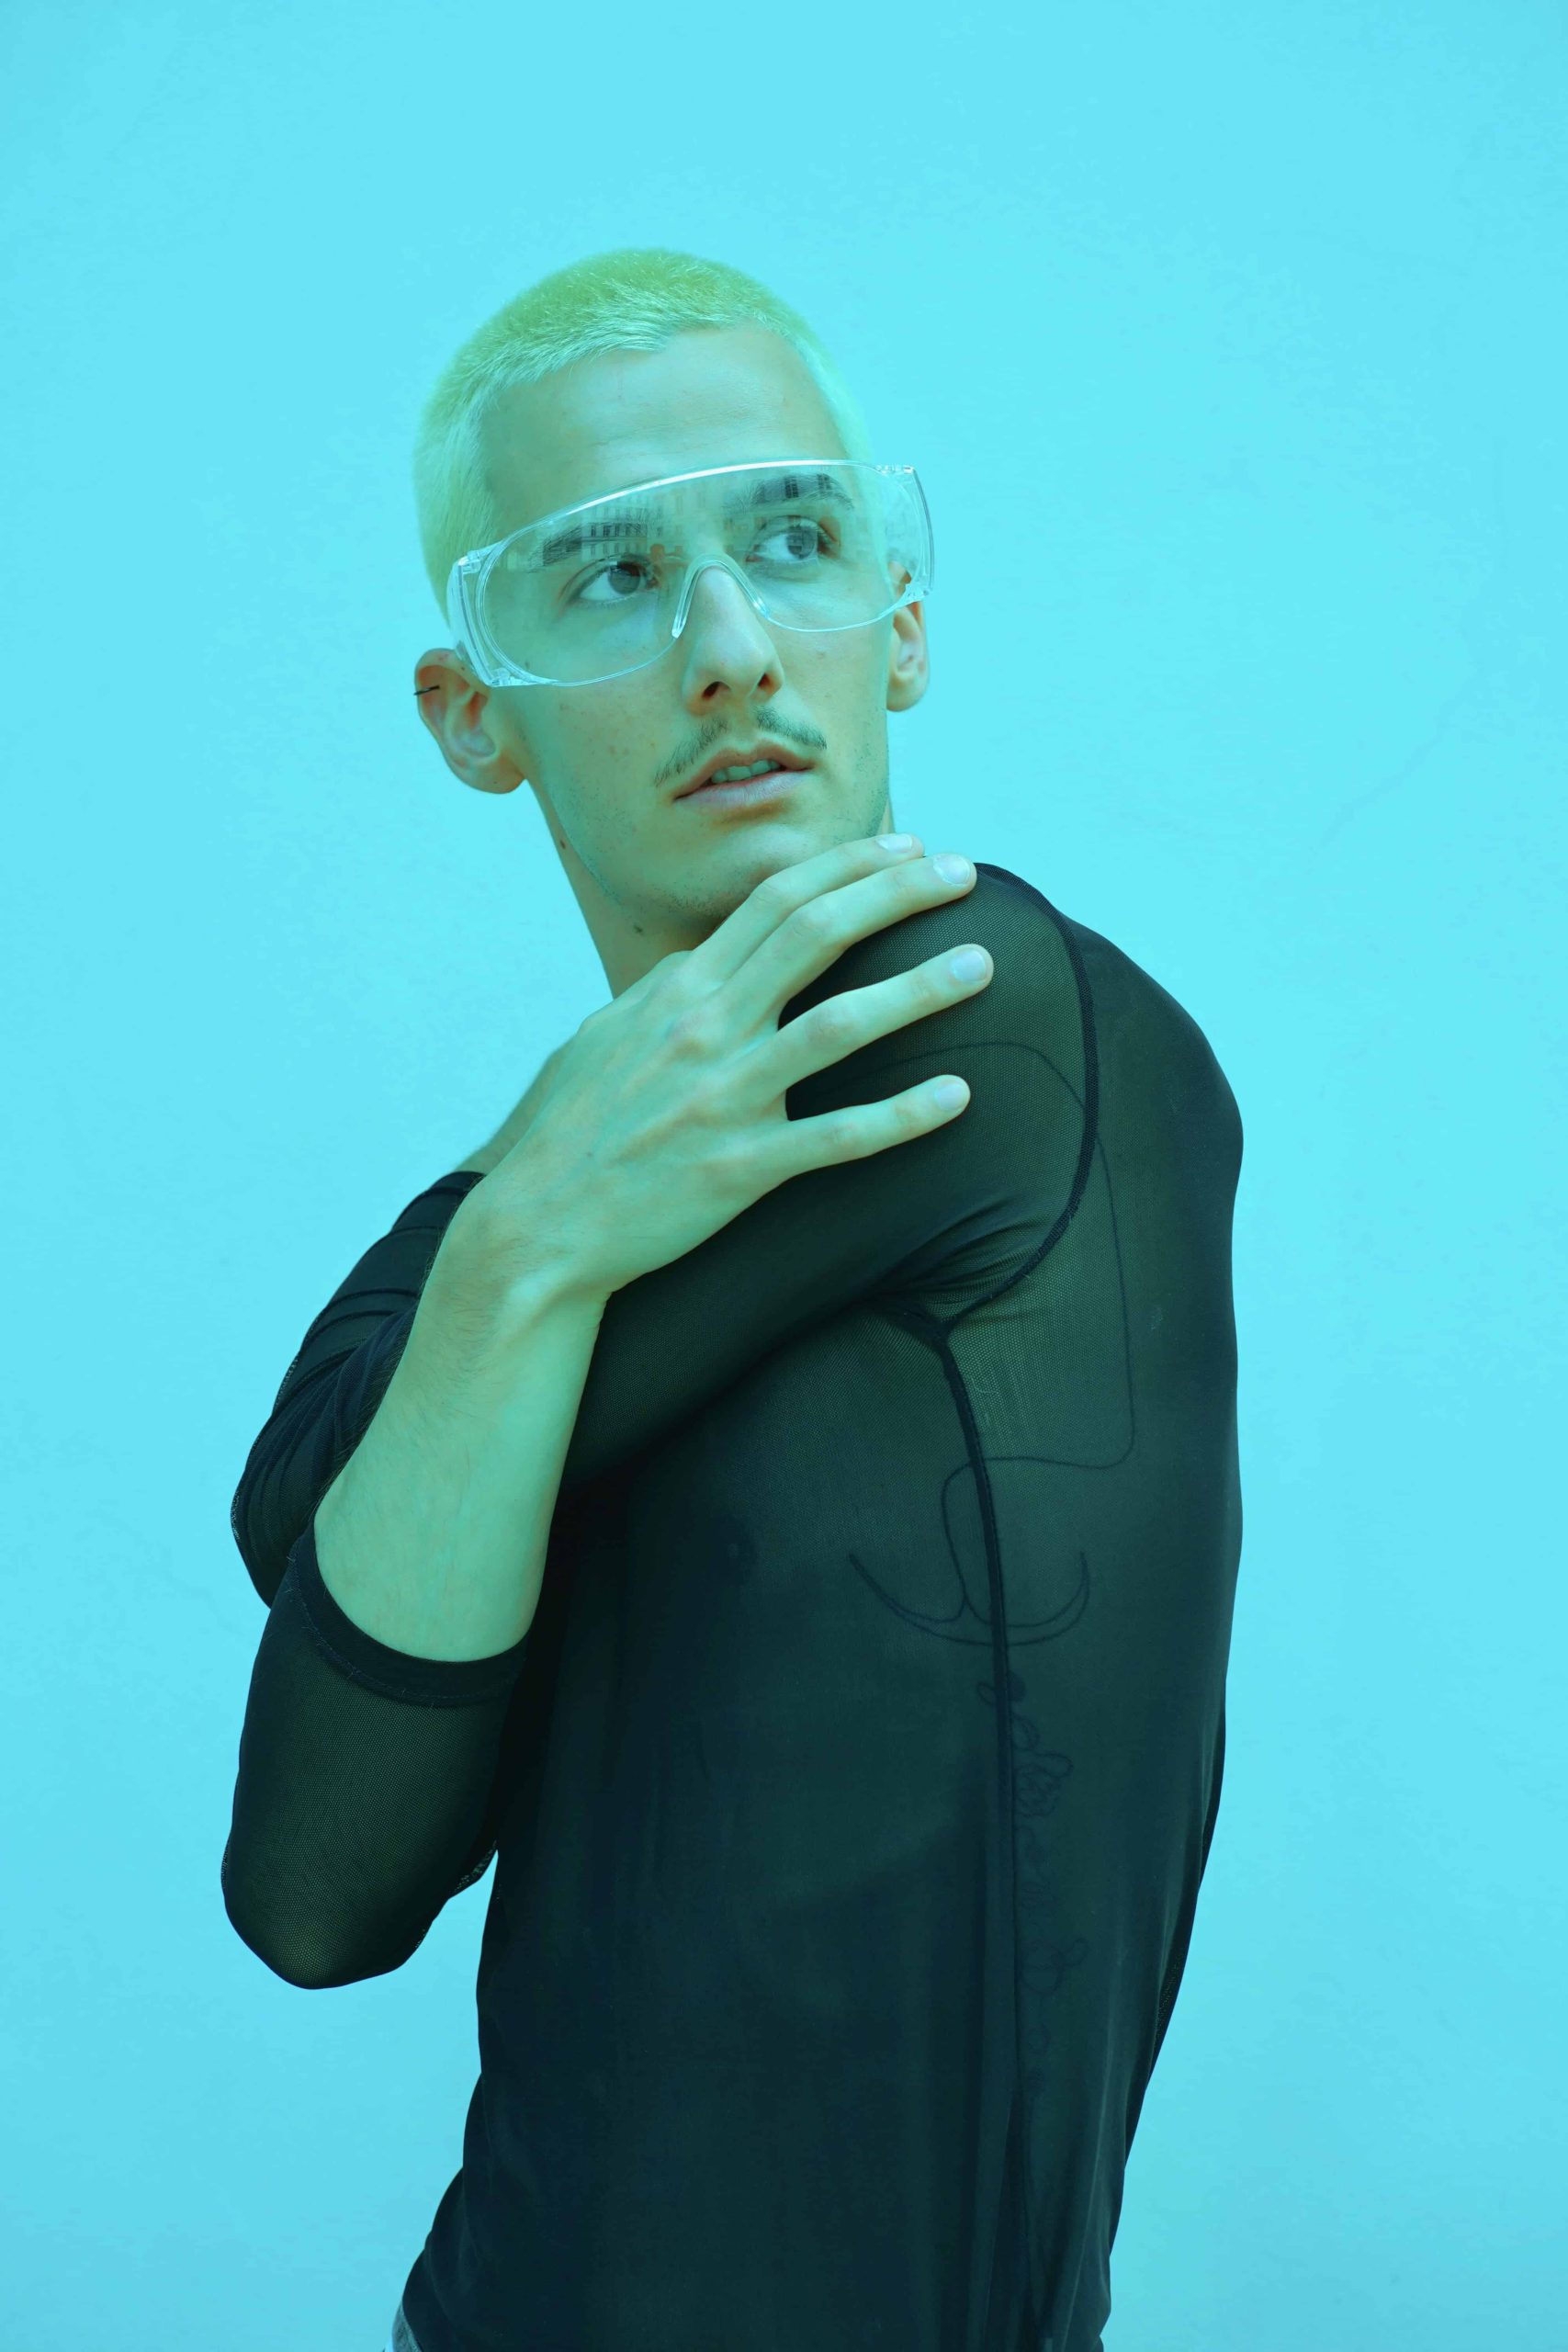 Ein blonder Mann in einem schwarzen Netz Oberteil steht vor einem grellblauen Hintergrund. Er trägt eine große transparente Brille und blickt zur Seite, seine Arme sind ineinander verschlungen.